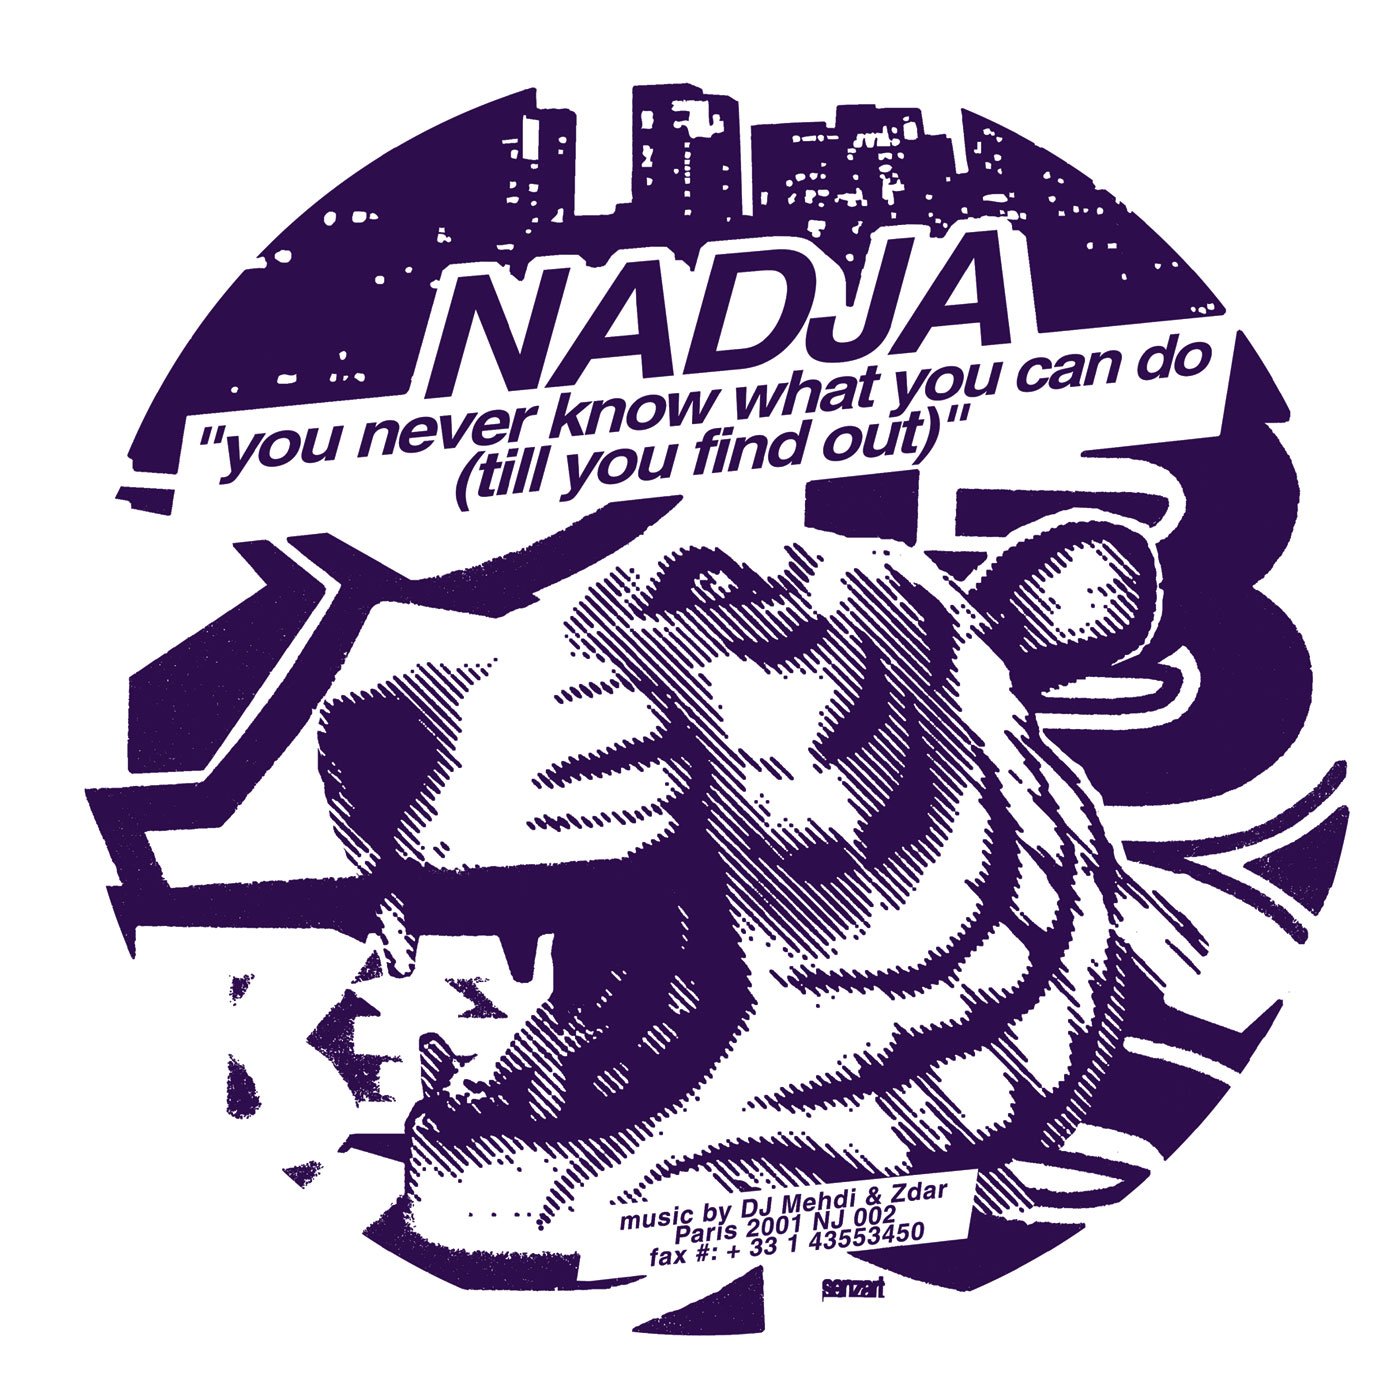 DJ Mehdi & Zdar - NADJA #002. Center label 2001.